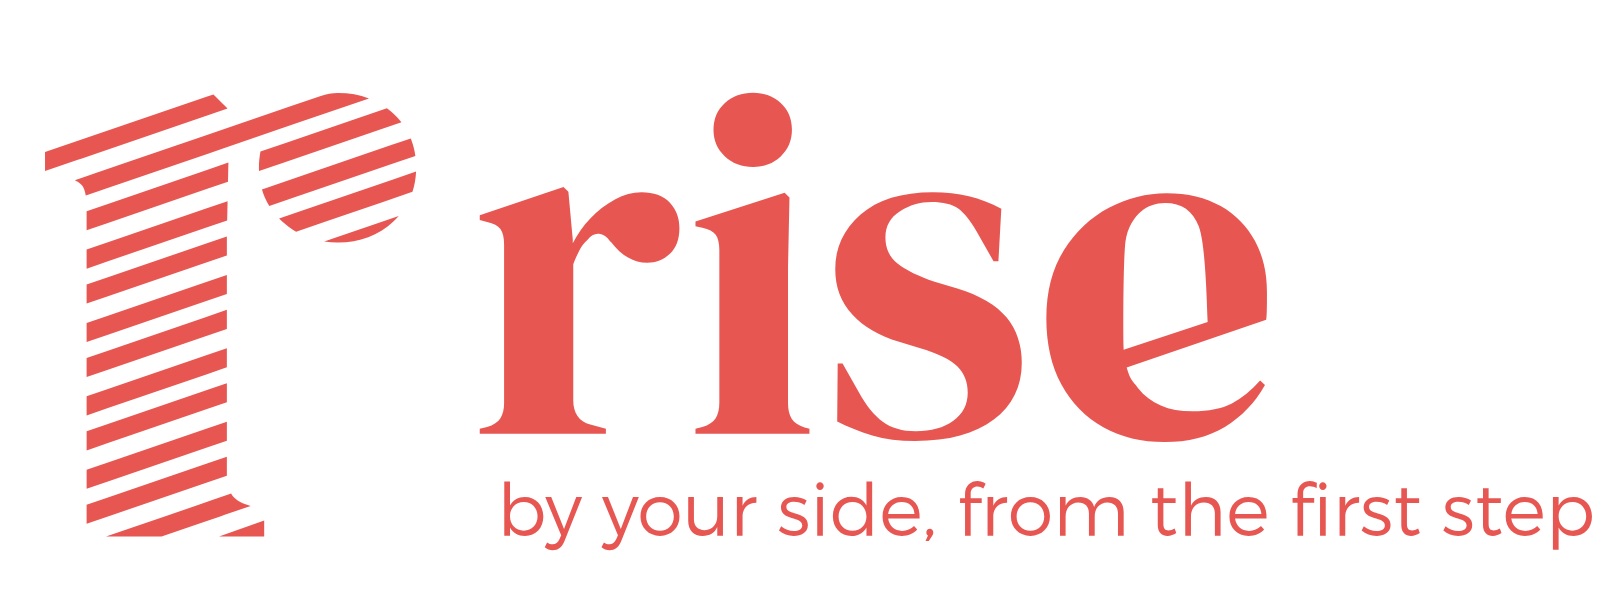 Logotipo RISE center_vd